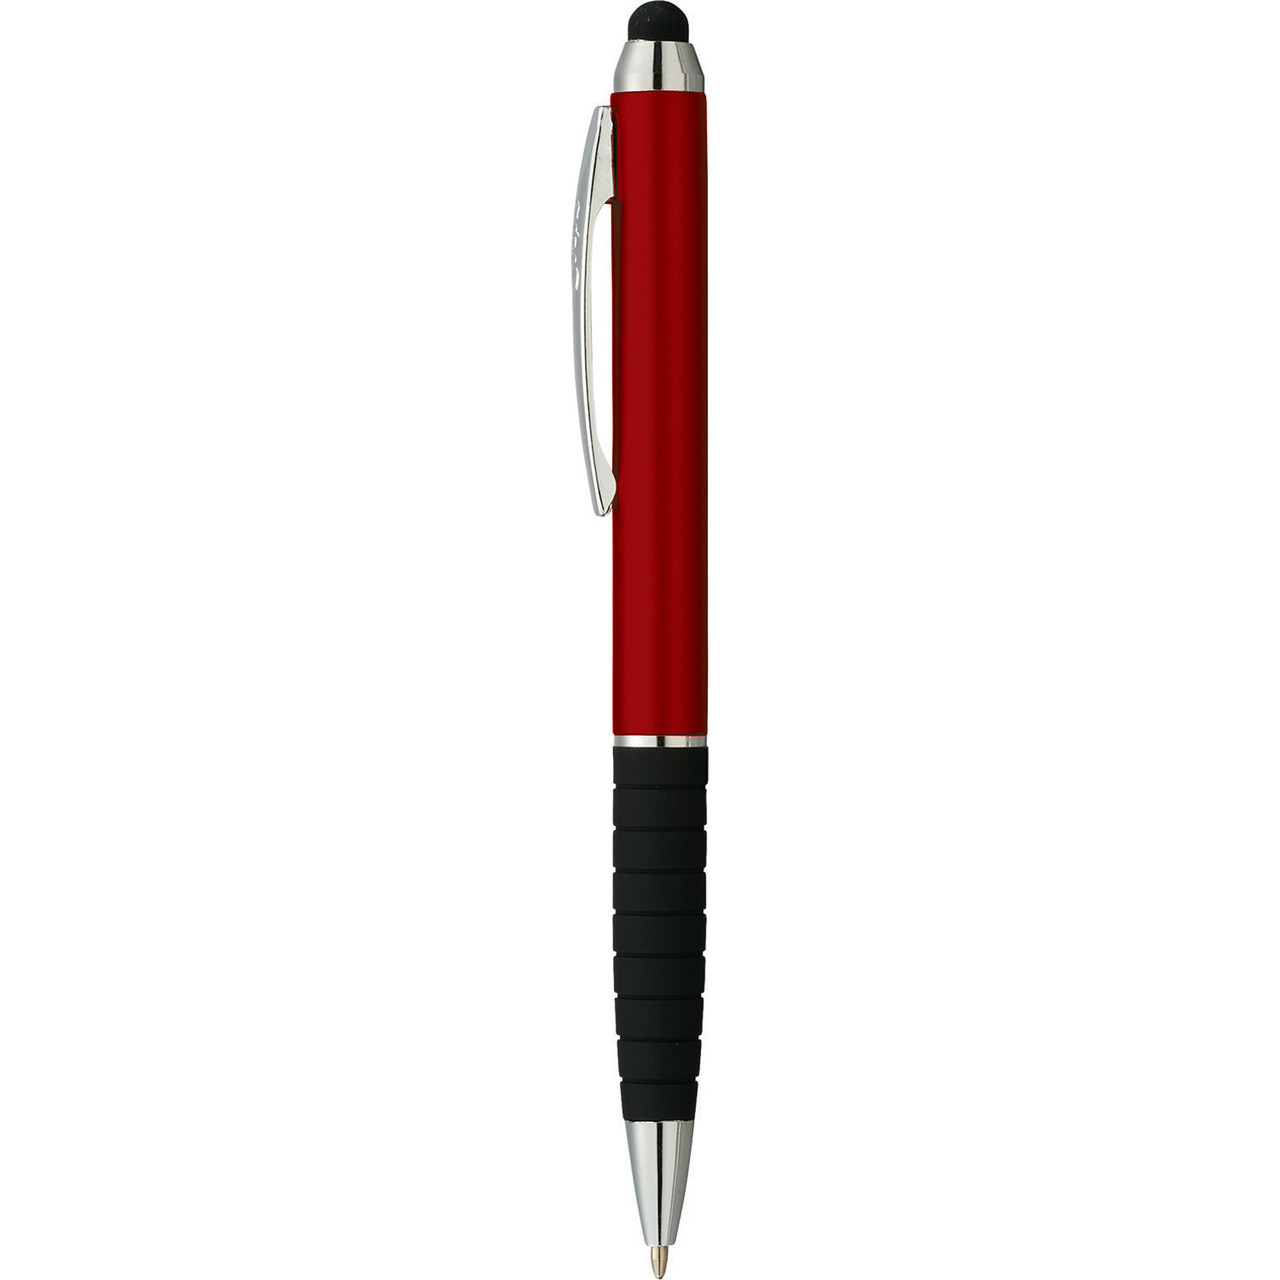 Promotional Islander Silver Gel Pen w/ Stylus Pen